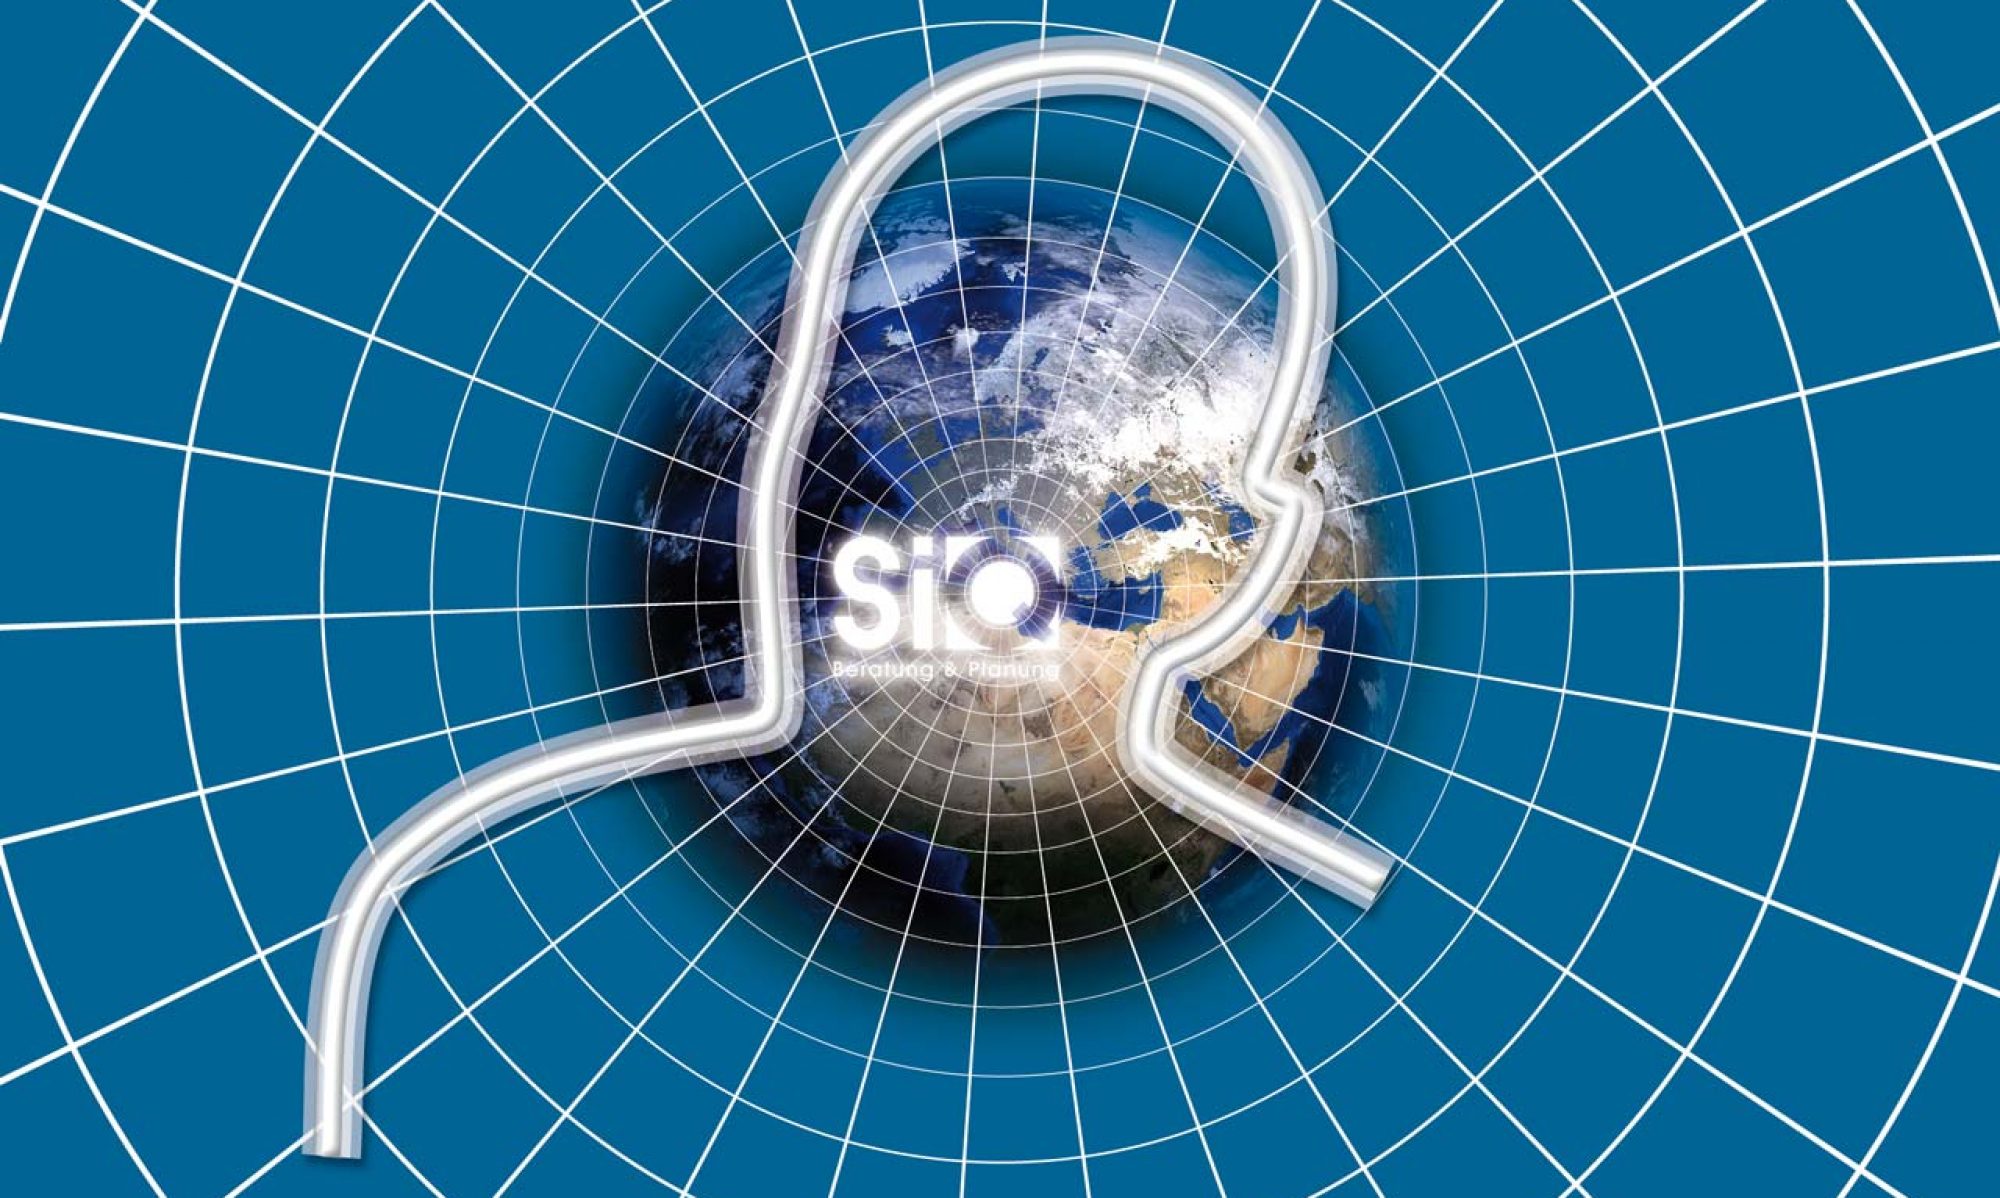 SiQ Gmbh – Sicherheitsberatung und Sicherheitsplanung